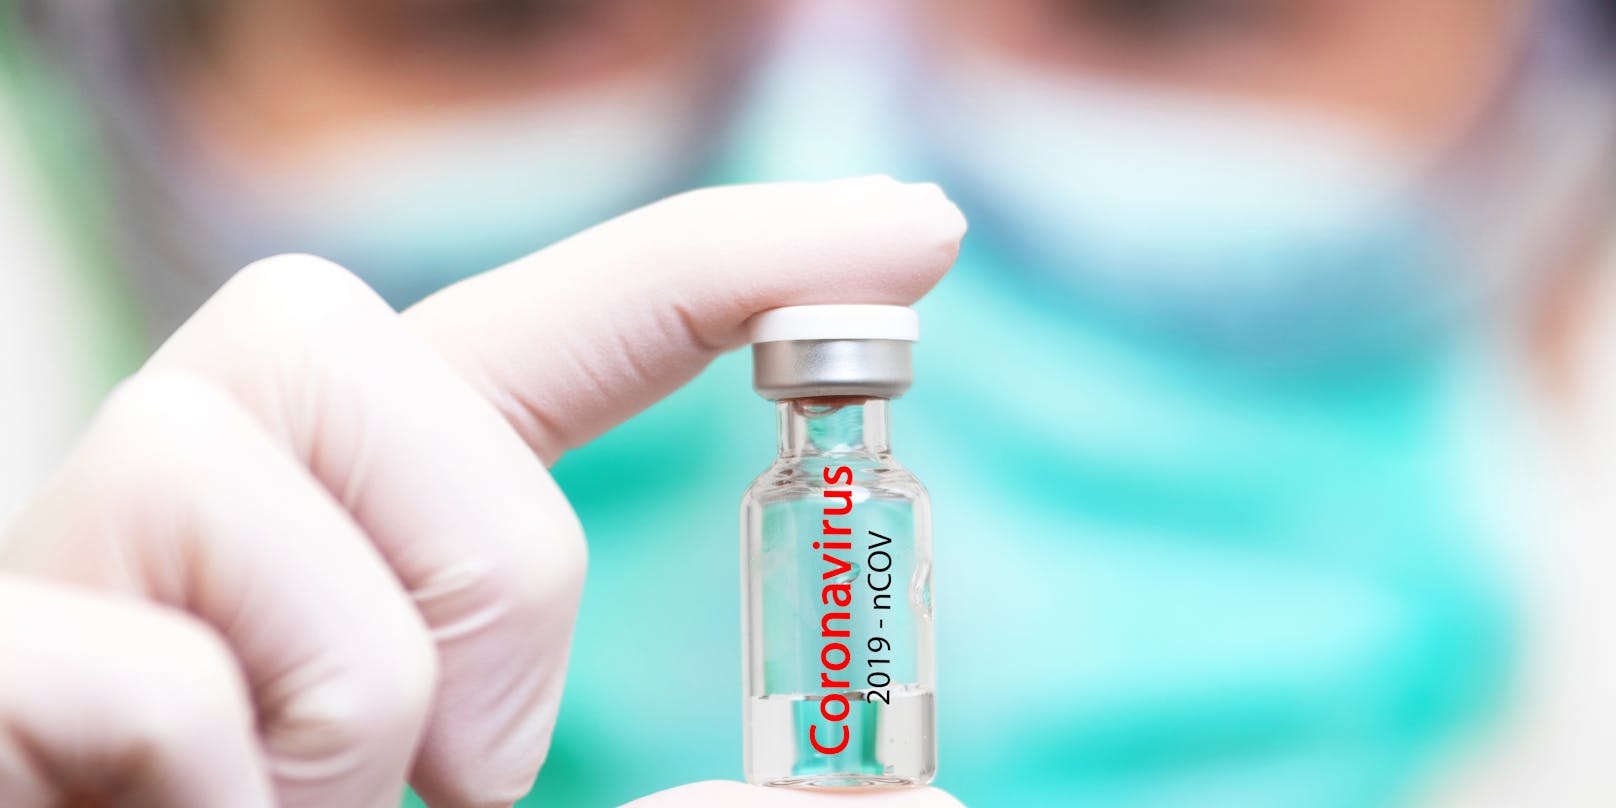 Innerhalb weniger Monaten sollen russische Forscher einen Coronavirus-Impfstoff entwickelt haben.